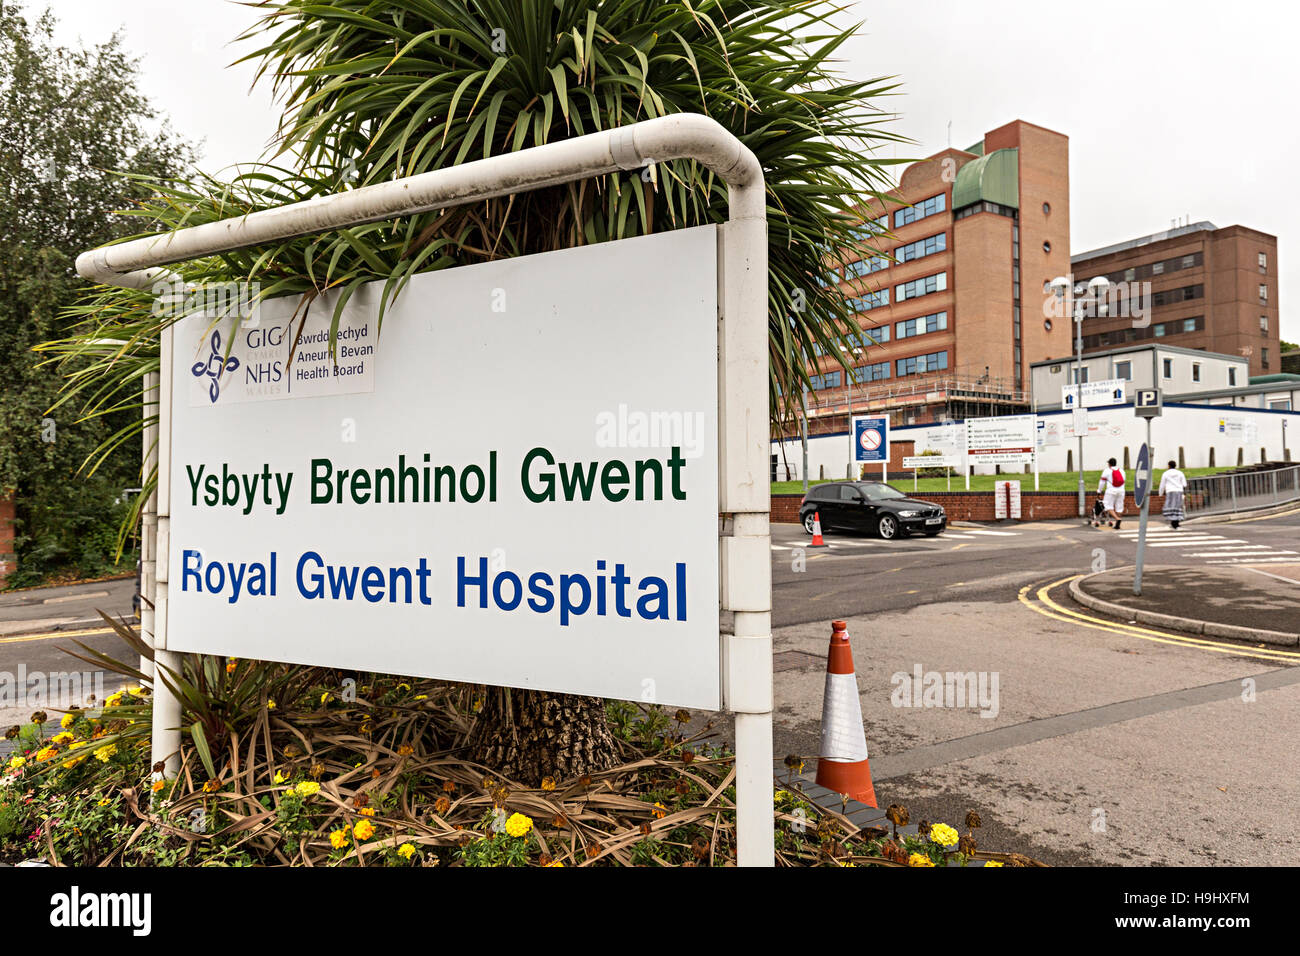 Royal Gwent Hospital sign at entrance, Newport, Wales, UK Stock Photo